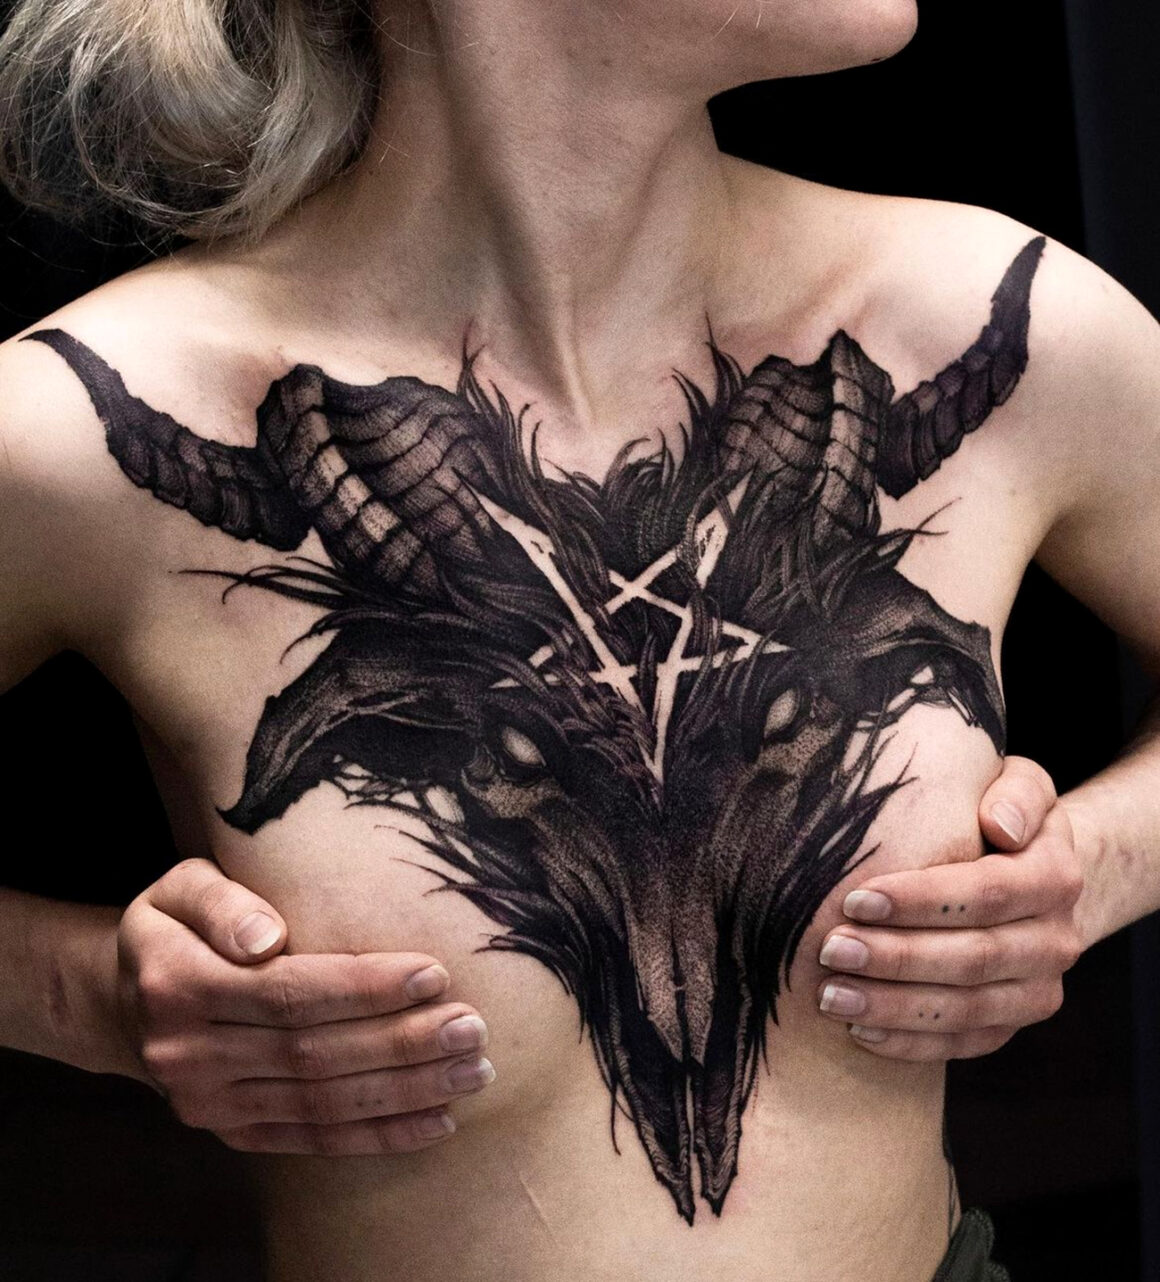 Tattoo by Helena Zolotykh, @bobavhett